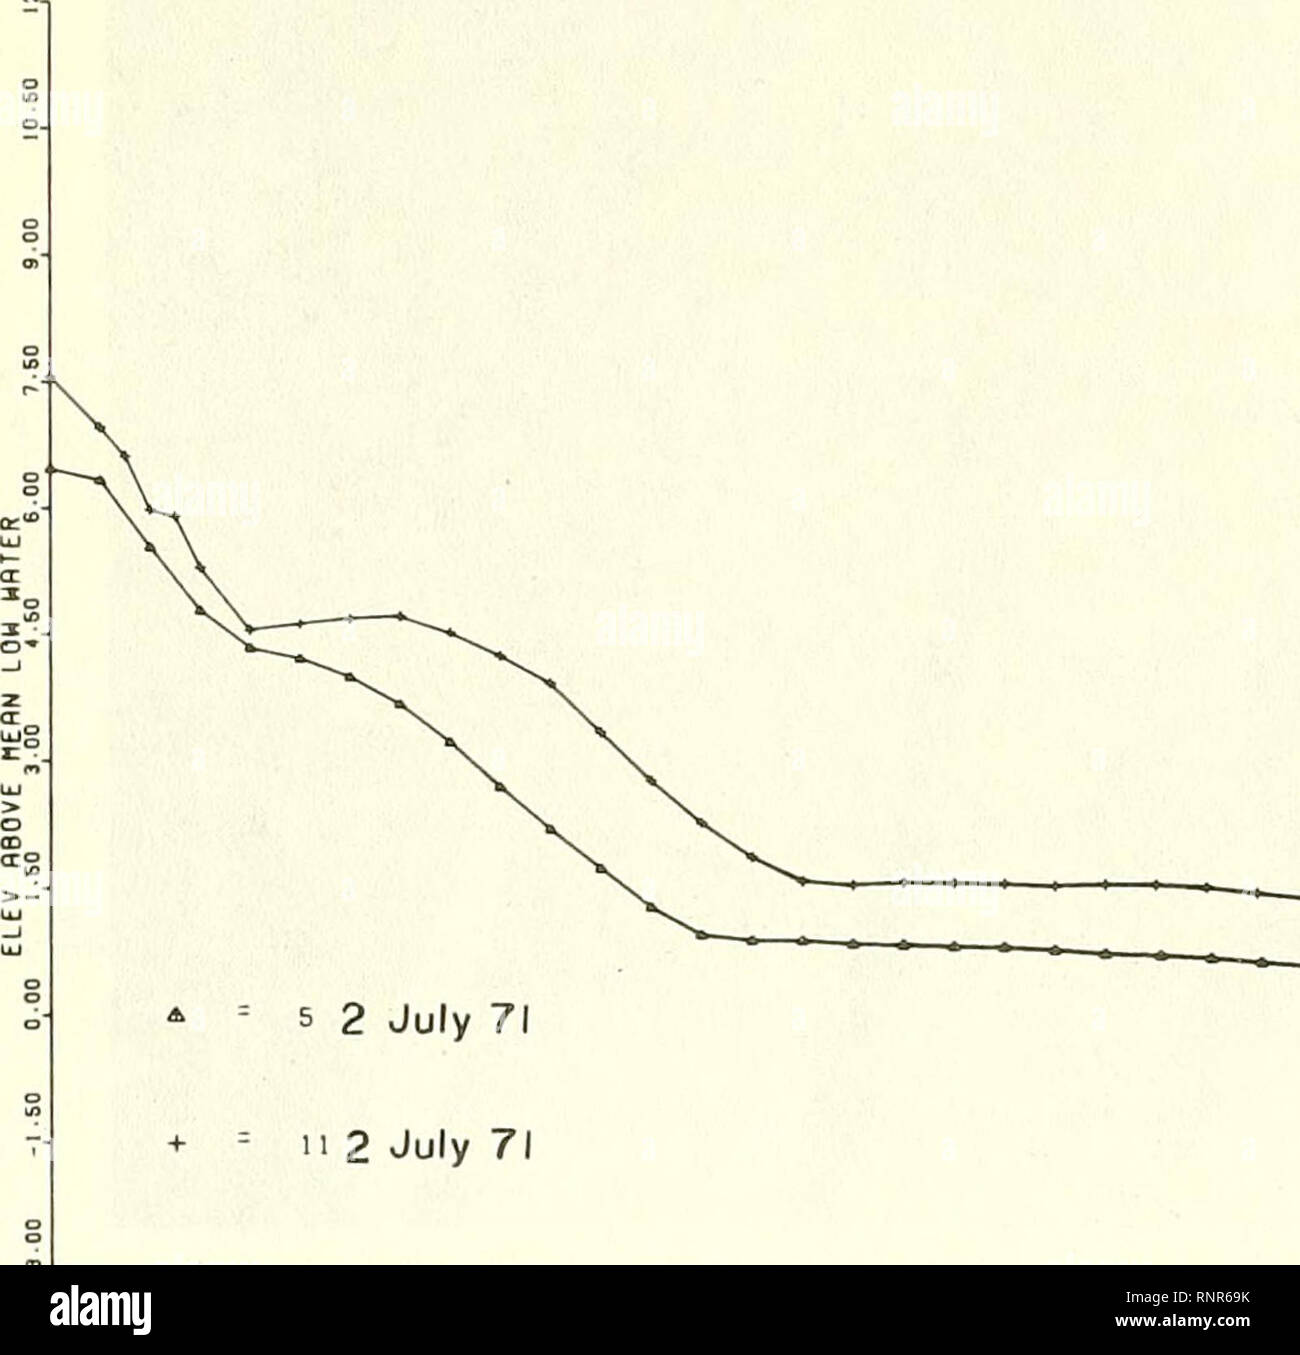 . Analisi delle variazioni a breve termine nella morfologia di spiaggia ( e concomitanti processi dinamici ) per i mesi estivi e invernali, 1971-72, prugna Isola, Massachusetts. Spiagge; onde dell'oceano. 7Tso STno si,così ' eb.oo eVsc 7i.oo "k-fo tb-oo "V.m ibs.oo nrio iko.oo io??.* la figura 14. Profili Pl-0 e Pl-5, 2 luglio 1971.. n 2 Luglio 71 è^JO 22 .in modo 30.00 37.60 "B-00B2.B0EB-00 87. BO 7B00 08. BO tb.00 I7.B0 lb5.00 lll.bO di ITO-OO Figura 15. Profili Pl-5 e PL-11, 2 luglio 1971. 34. Si prega di notare che queste immagini vengono estratte dalla pagina sottoposta a scansione di immagini che possono essere state migliorate digitalmente per la leggibilità - colorati Foto Stock